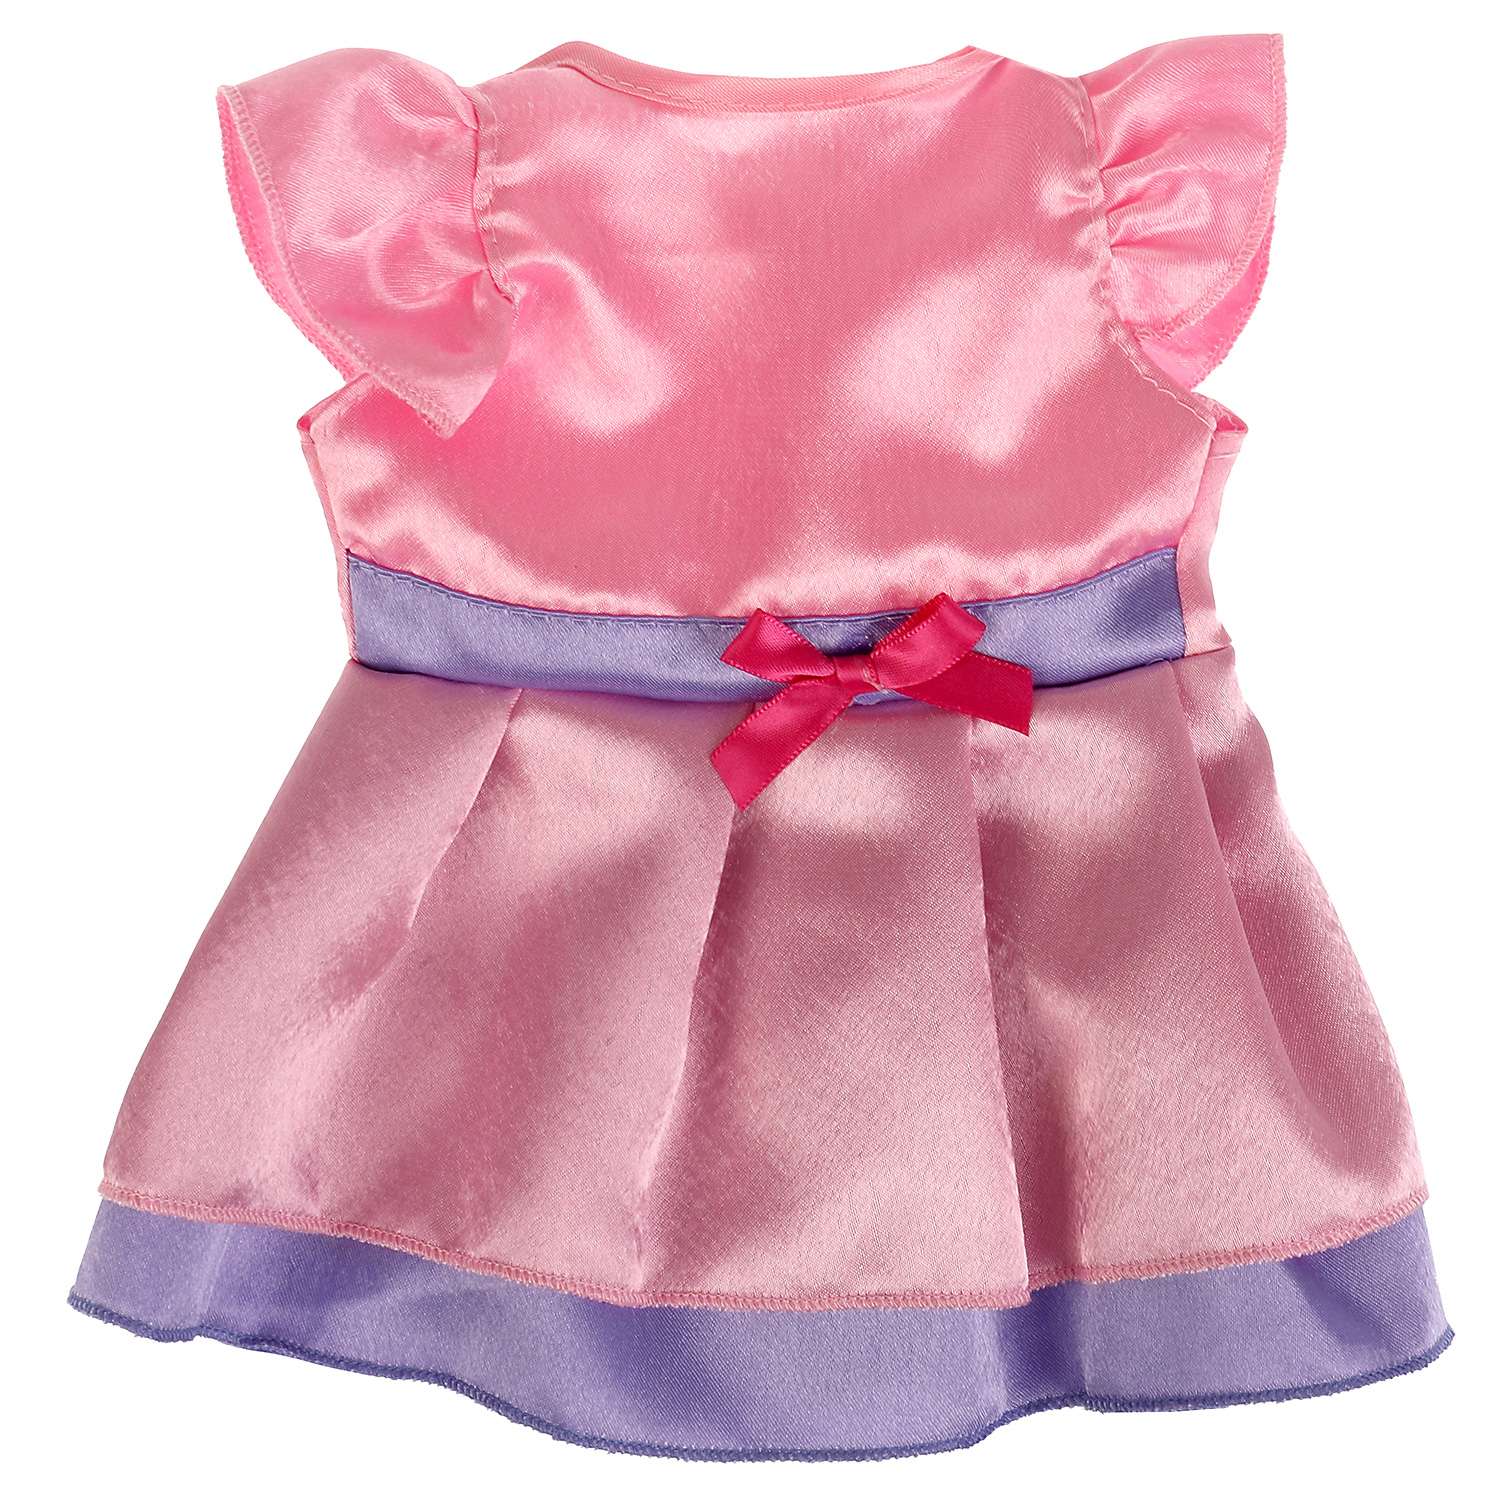 Одежда для кукол Карапуз 40-42 см платье розово-фиолетовое 334996 - фото 1